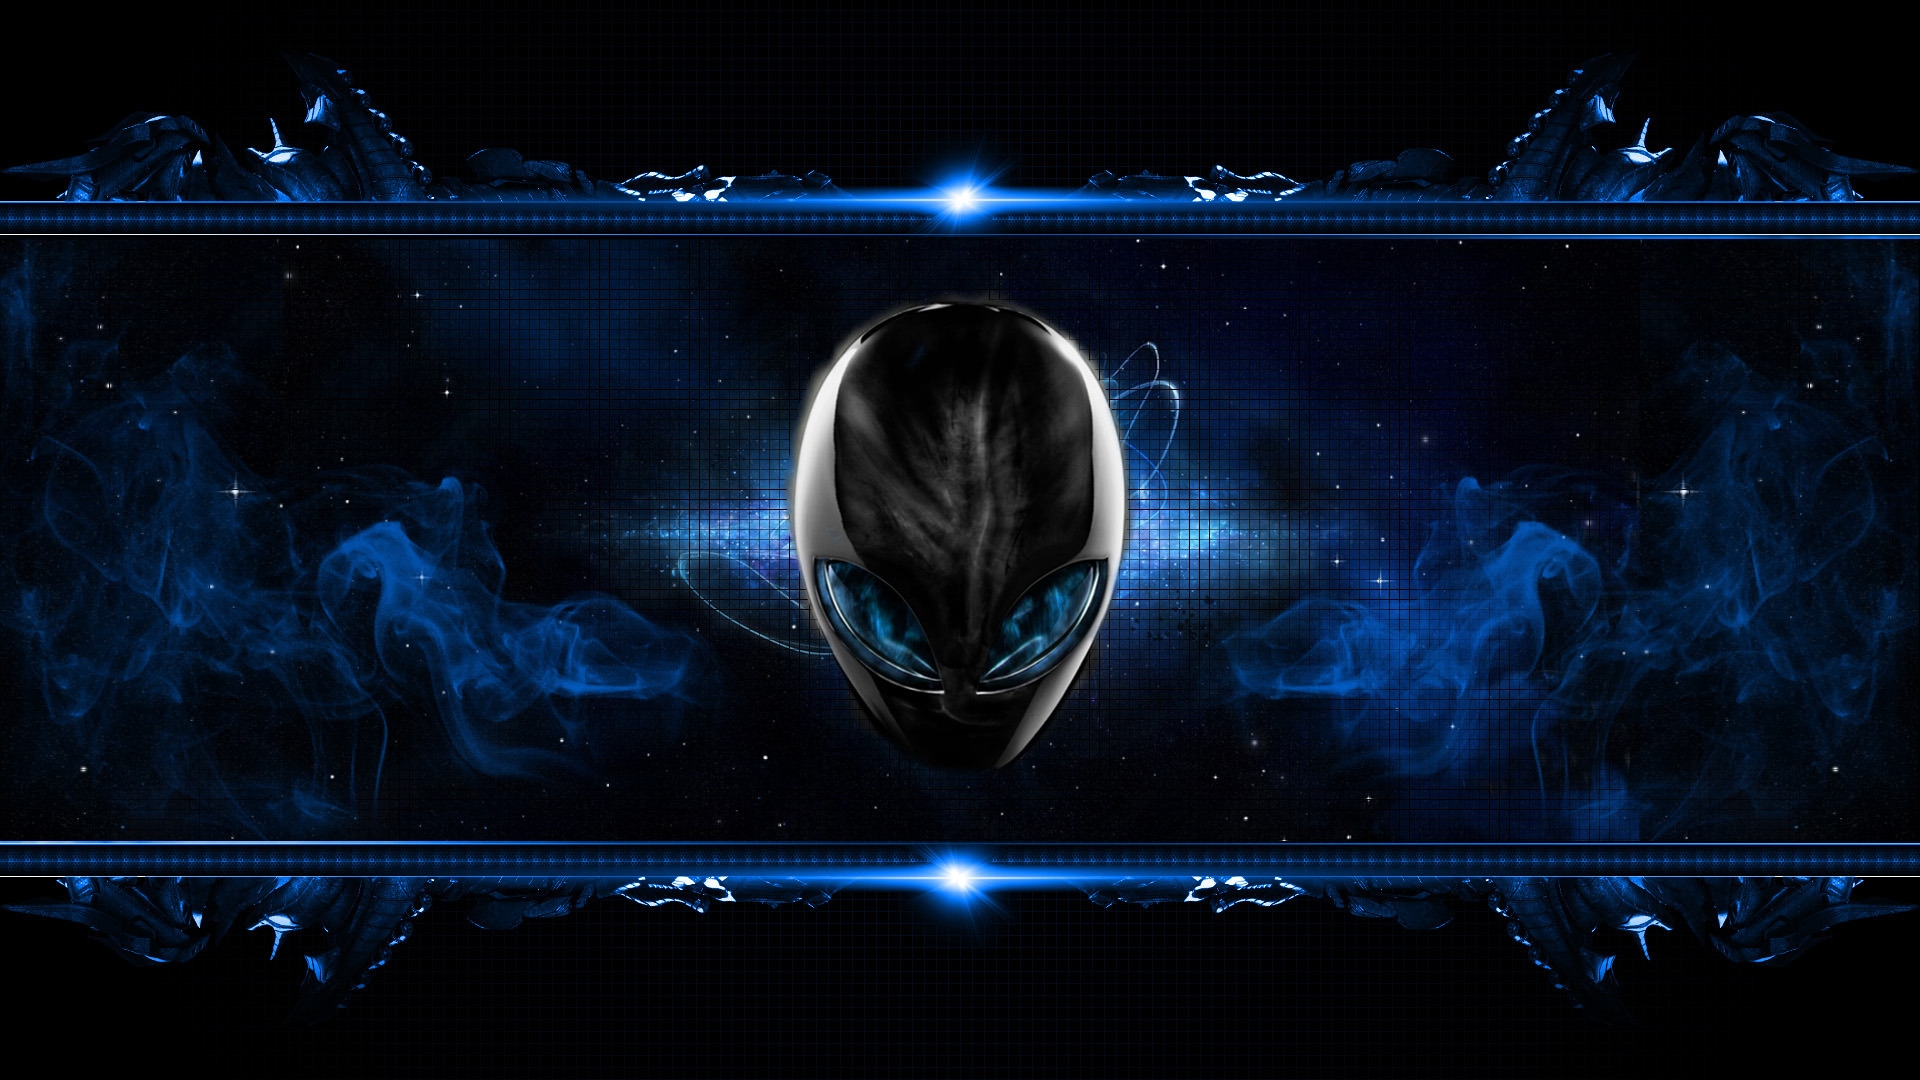 Blue Alien for 1920 x 1080 HDTV 1080p resolution